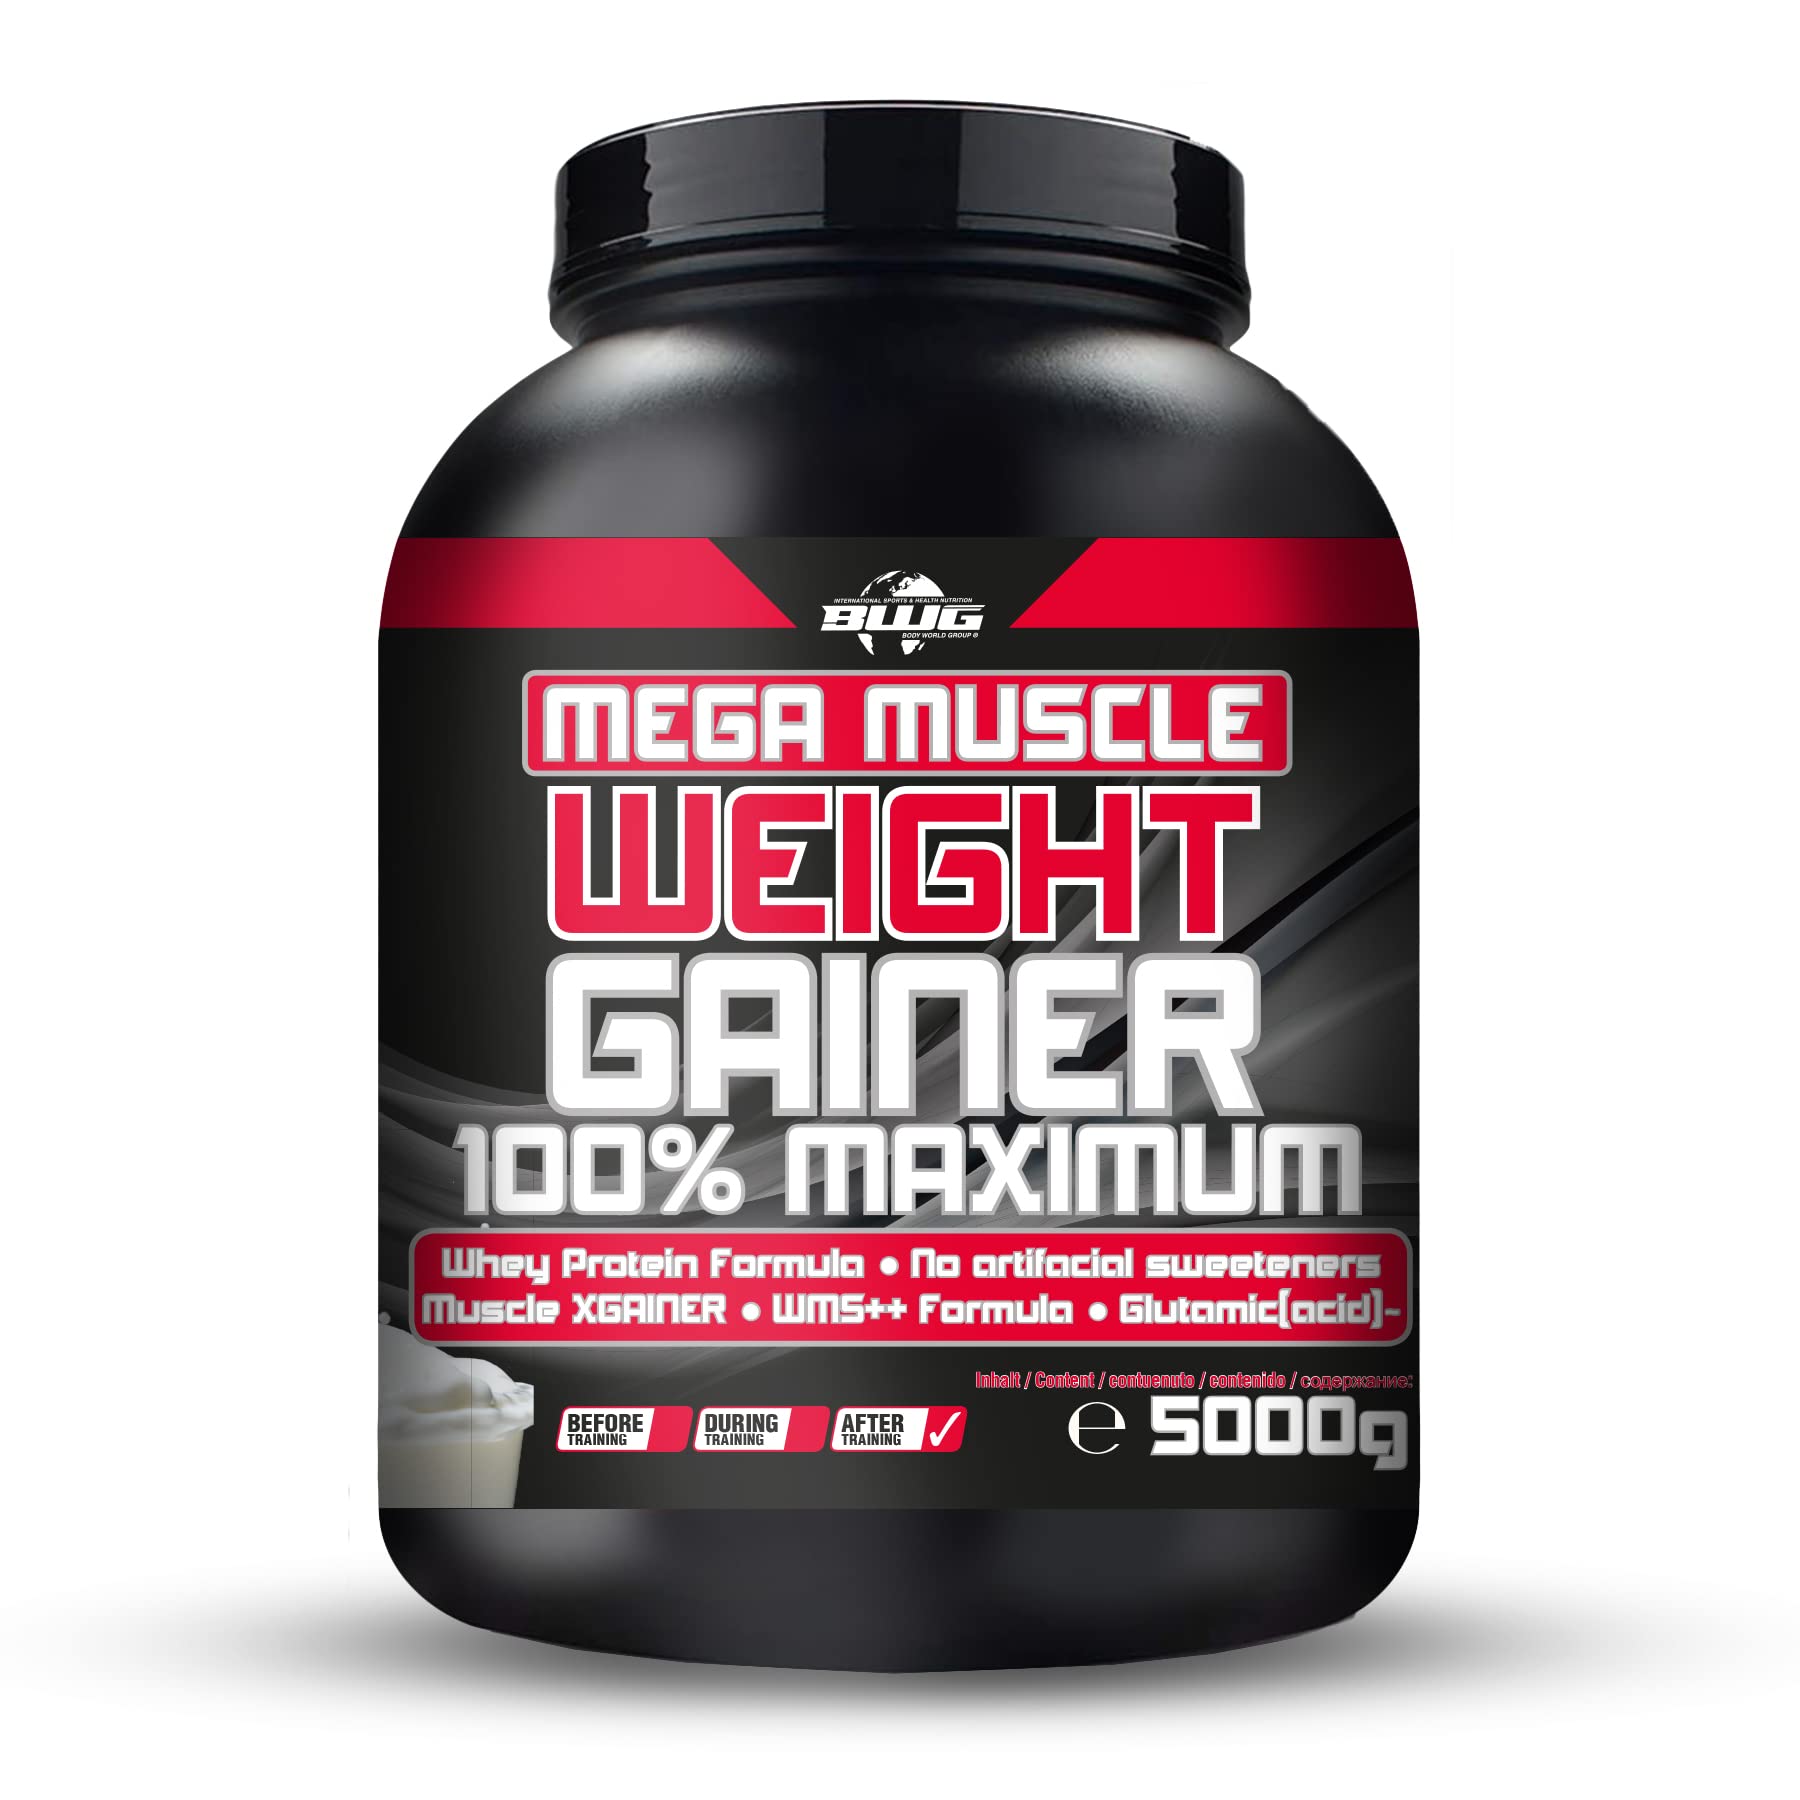 BWG Mega Muscle Weight Gainer 100% Maximum - perfekt für HardGainer und Massephasen – Kraftaufbau - Mega Chocolate - Dose mit Dosierlöffel - (1x 5000g Dose)